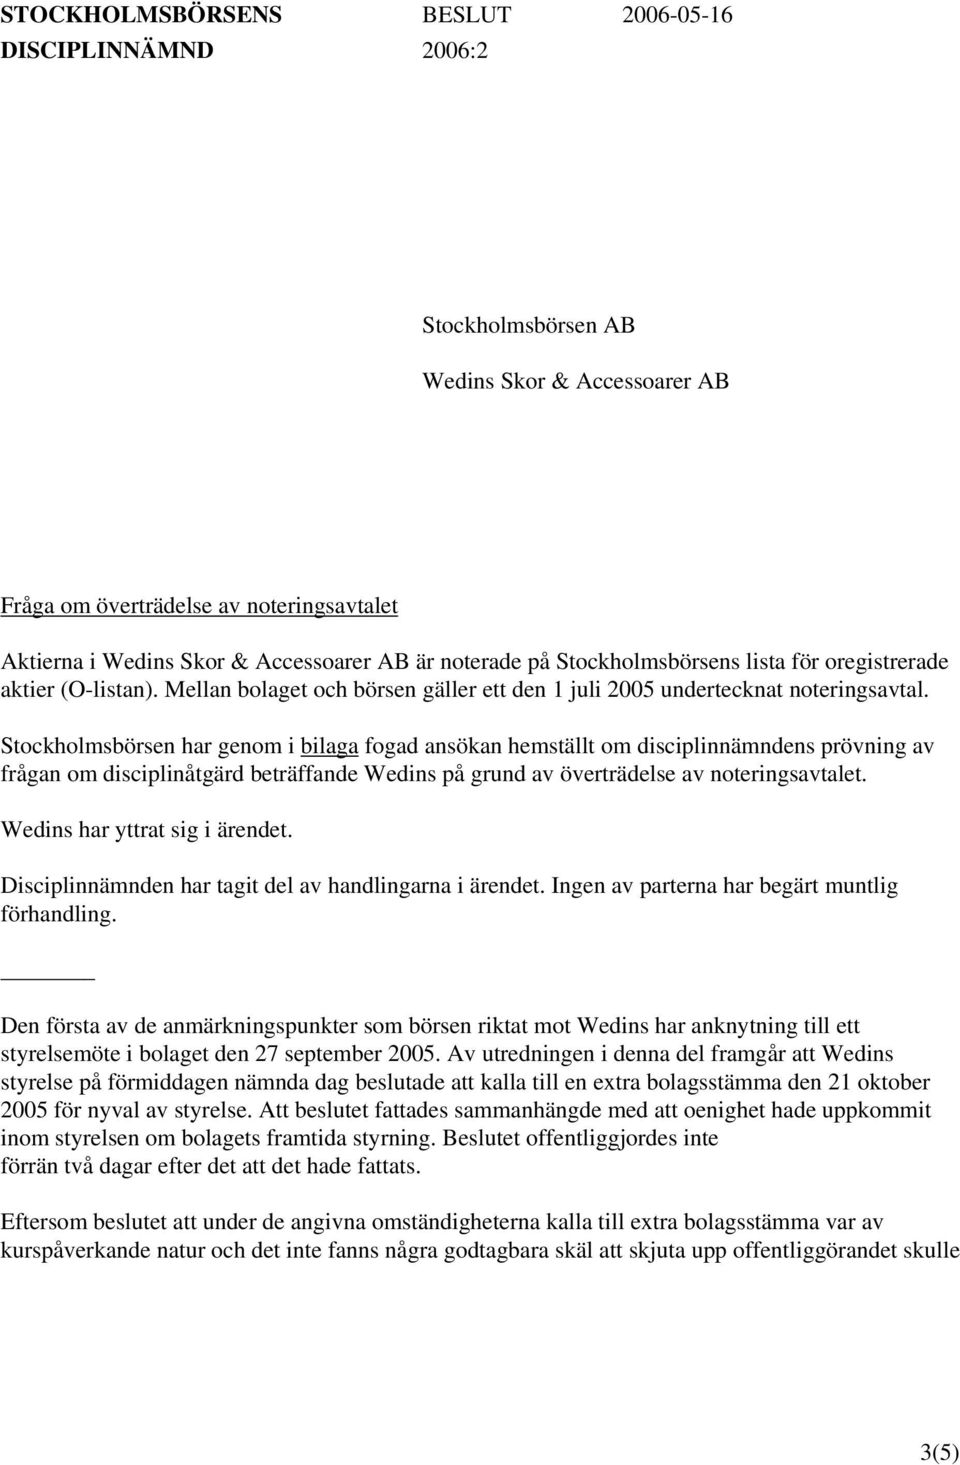 Stockholmsbörsen har genom i bilaga fogad ansökan hemställt om disciplinnämndens prövning av frågan om disciplinåtgärd beträffande Wedins på grund av överträdelse av noteringsavtalet.